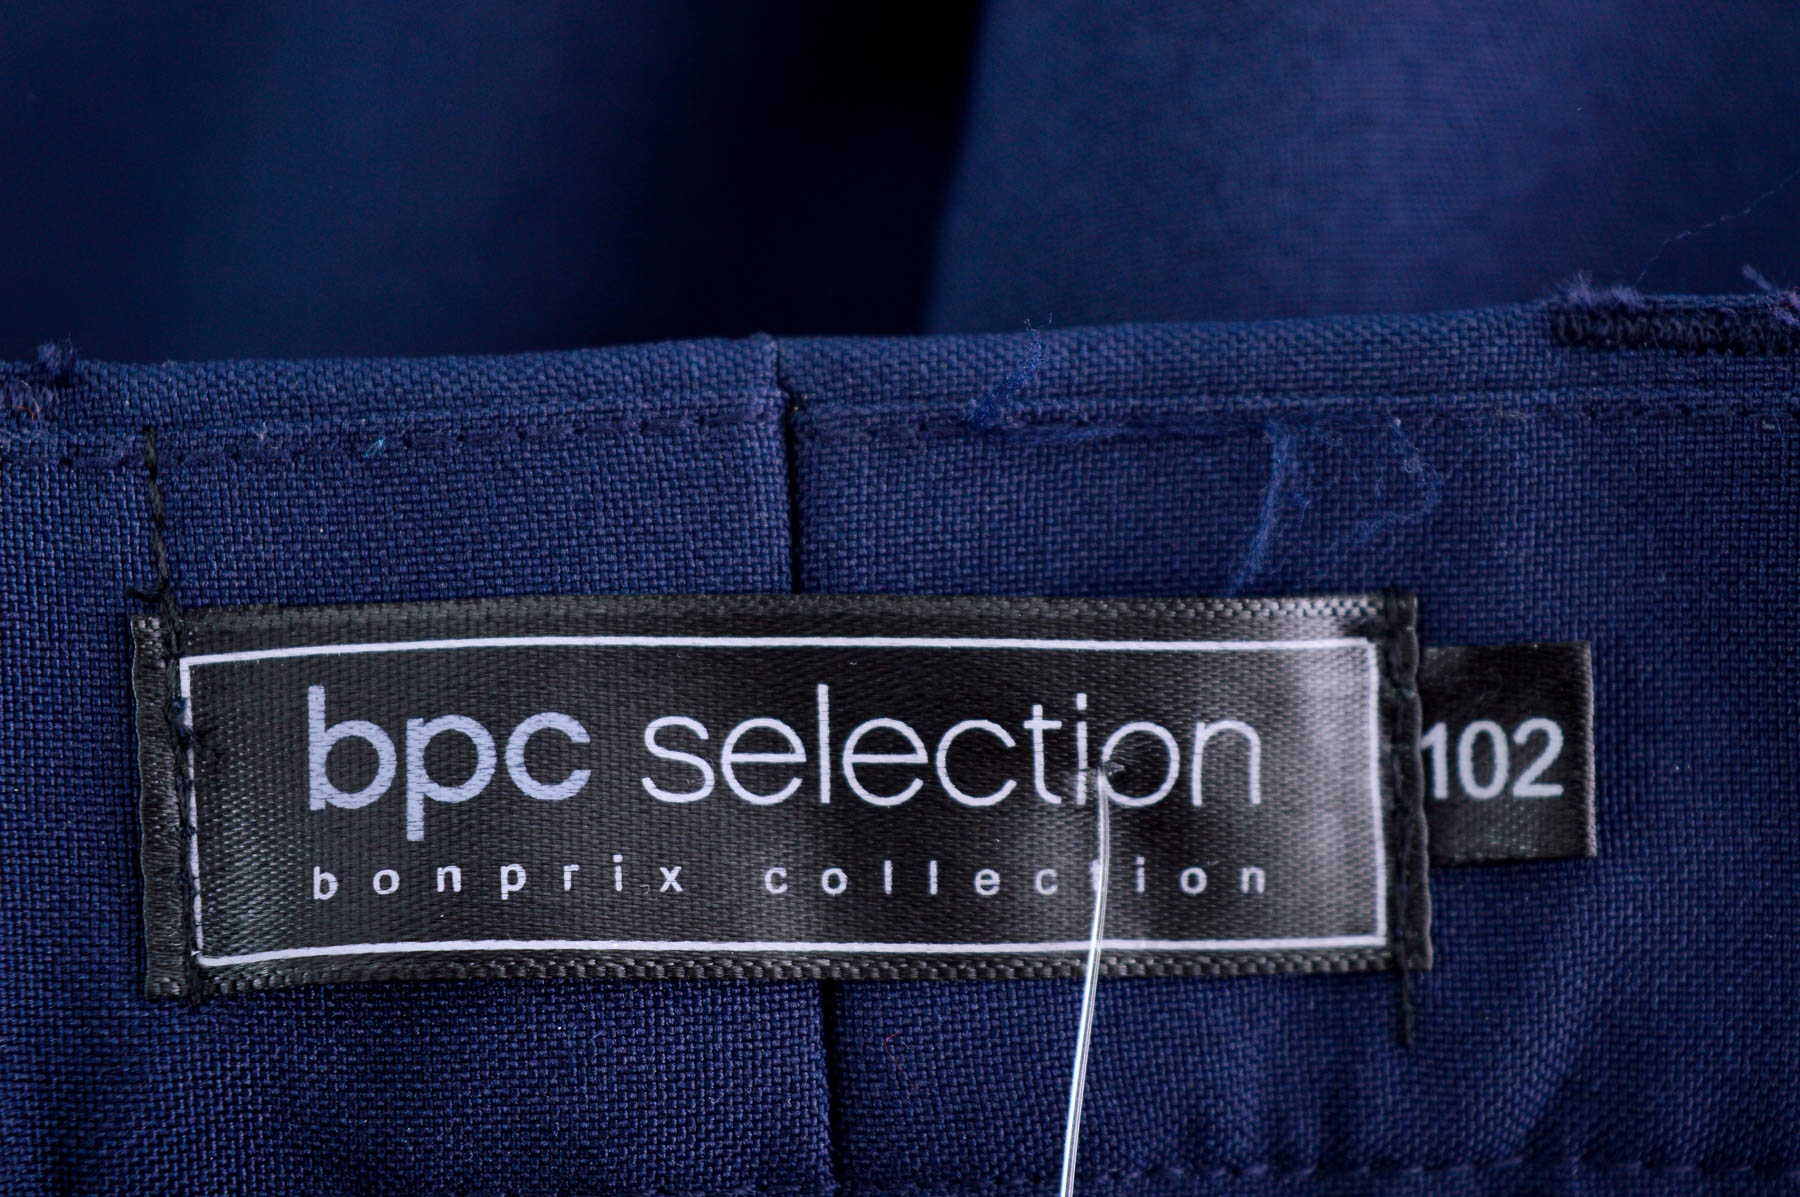 Men's trousers - Bpc Selection Bonprix Collection - 2